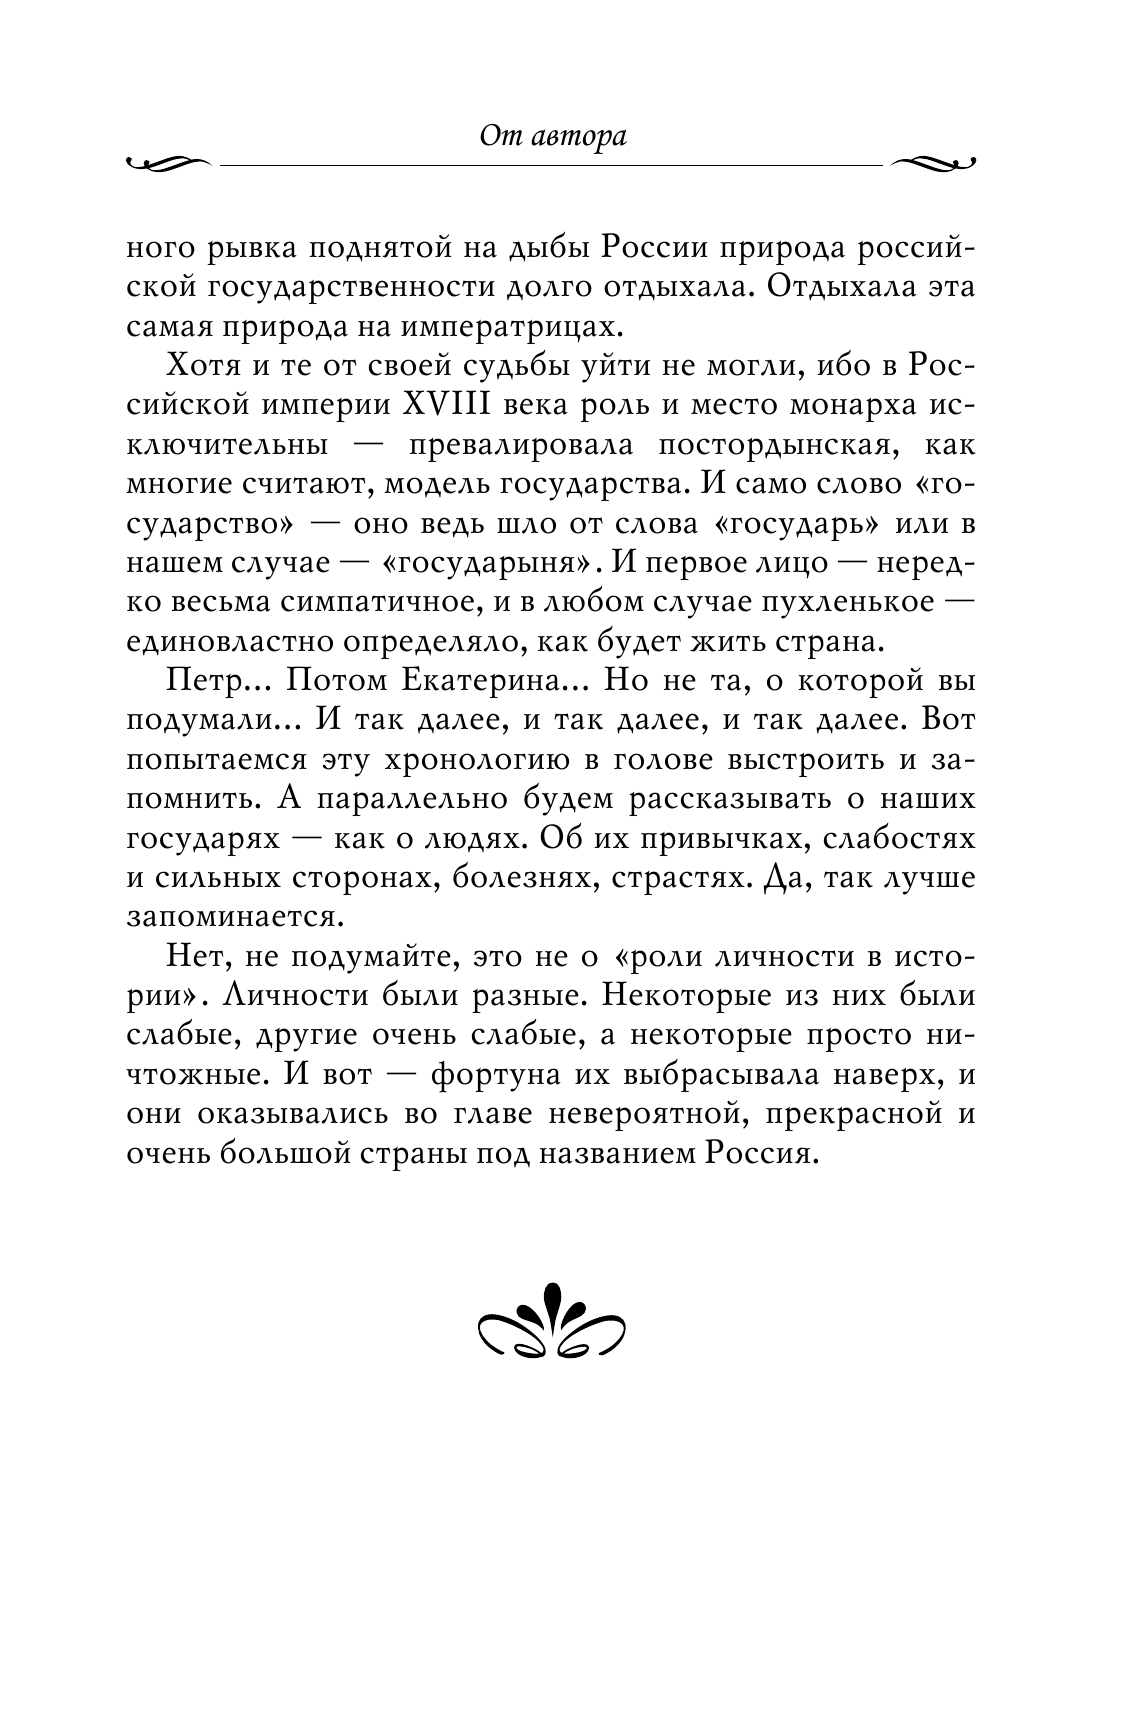 Рассказы из русской истории. XVIII век 11